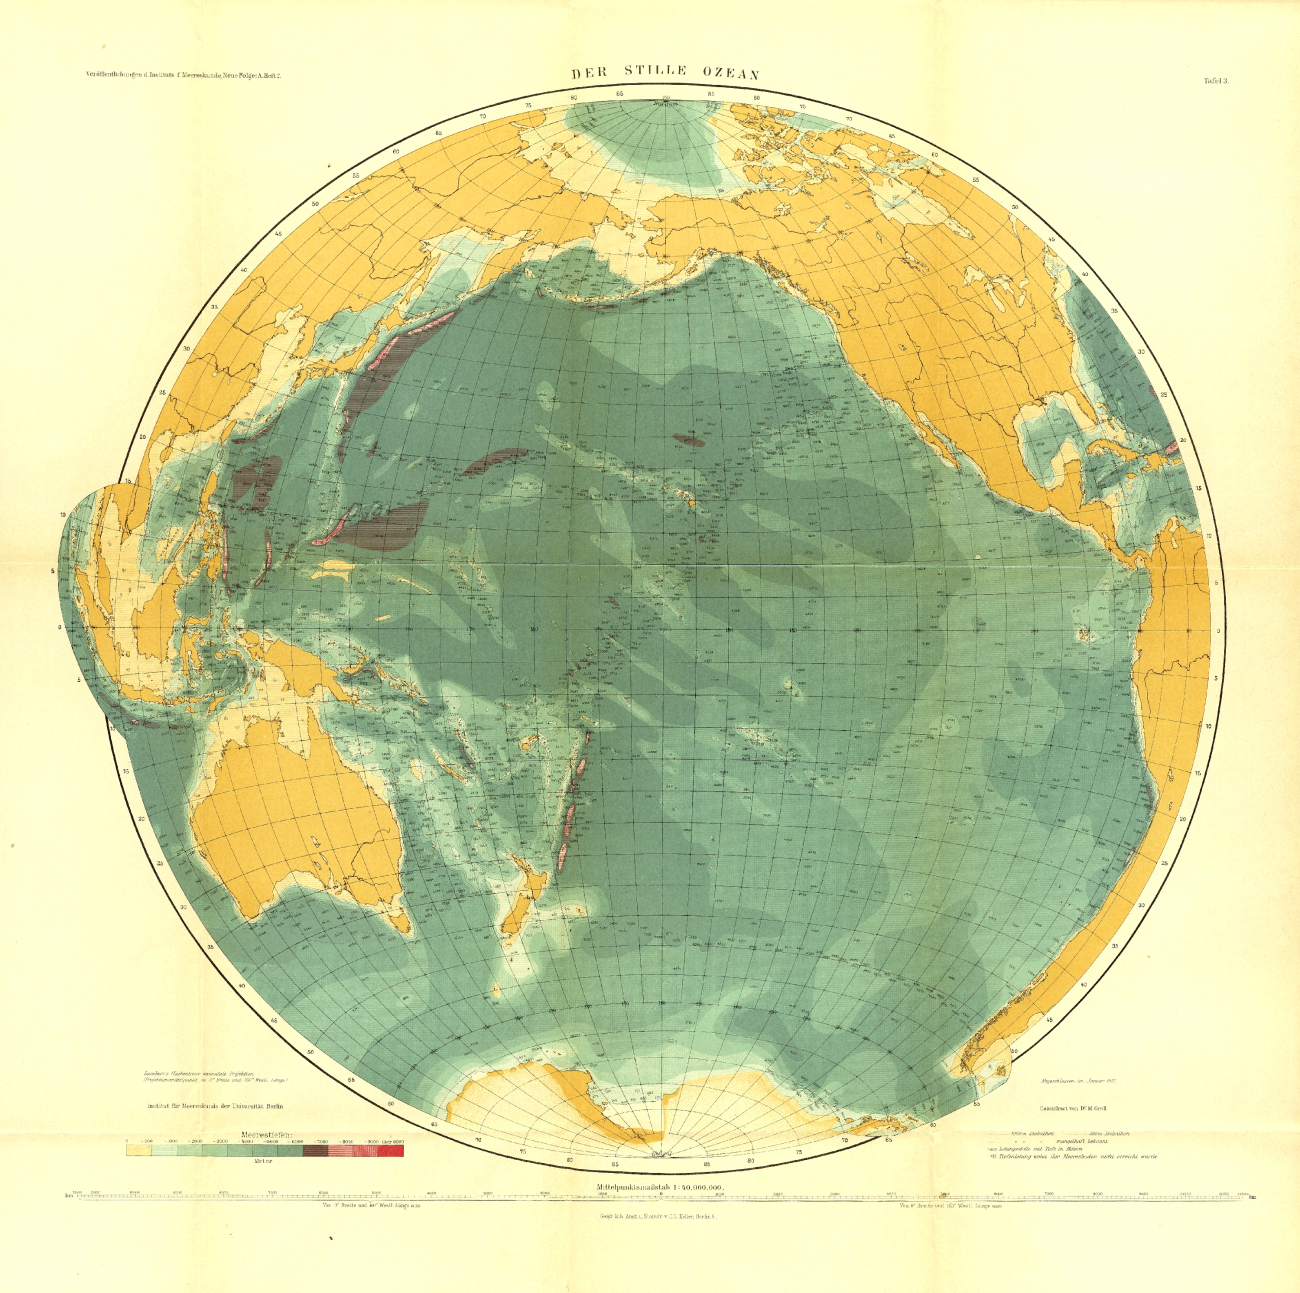 A 1912 map of the Pacific Ocean  in Tiefenkarten der Ozeane mit Erlauterungenby Max Groll